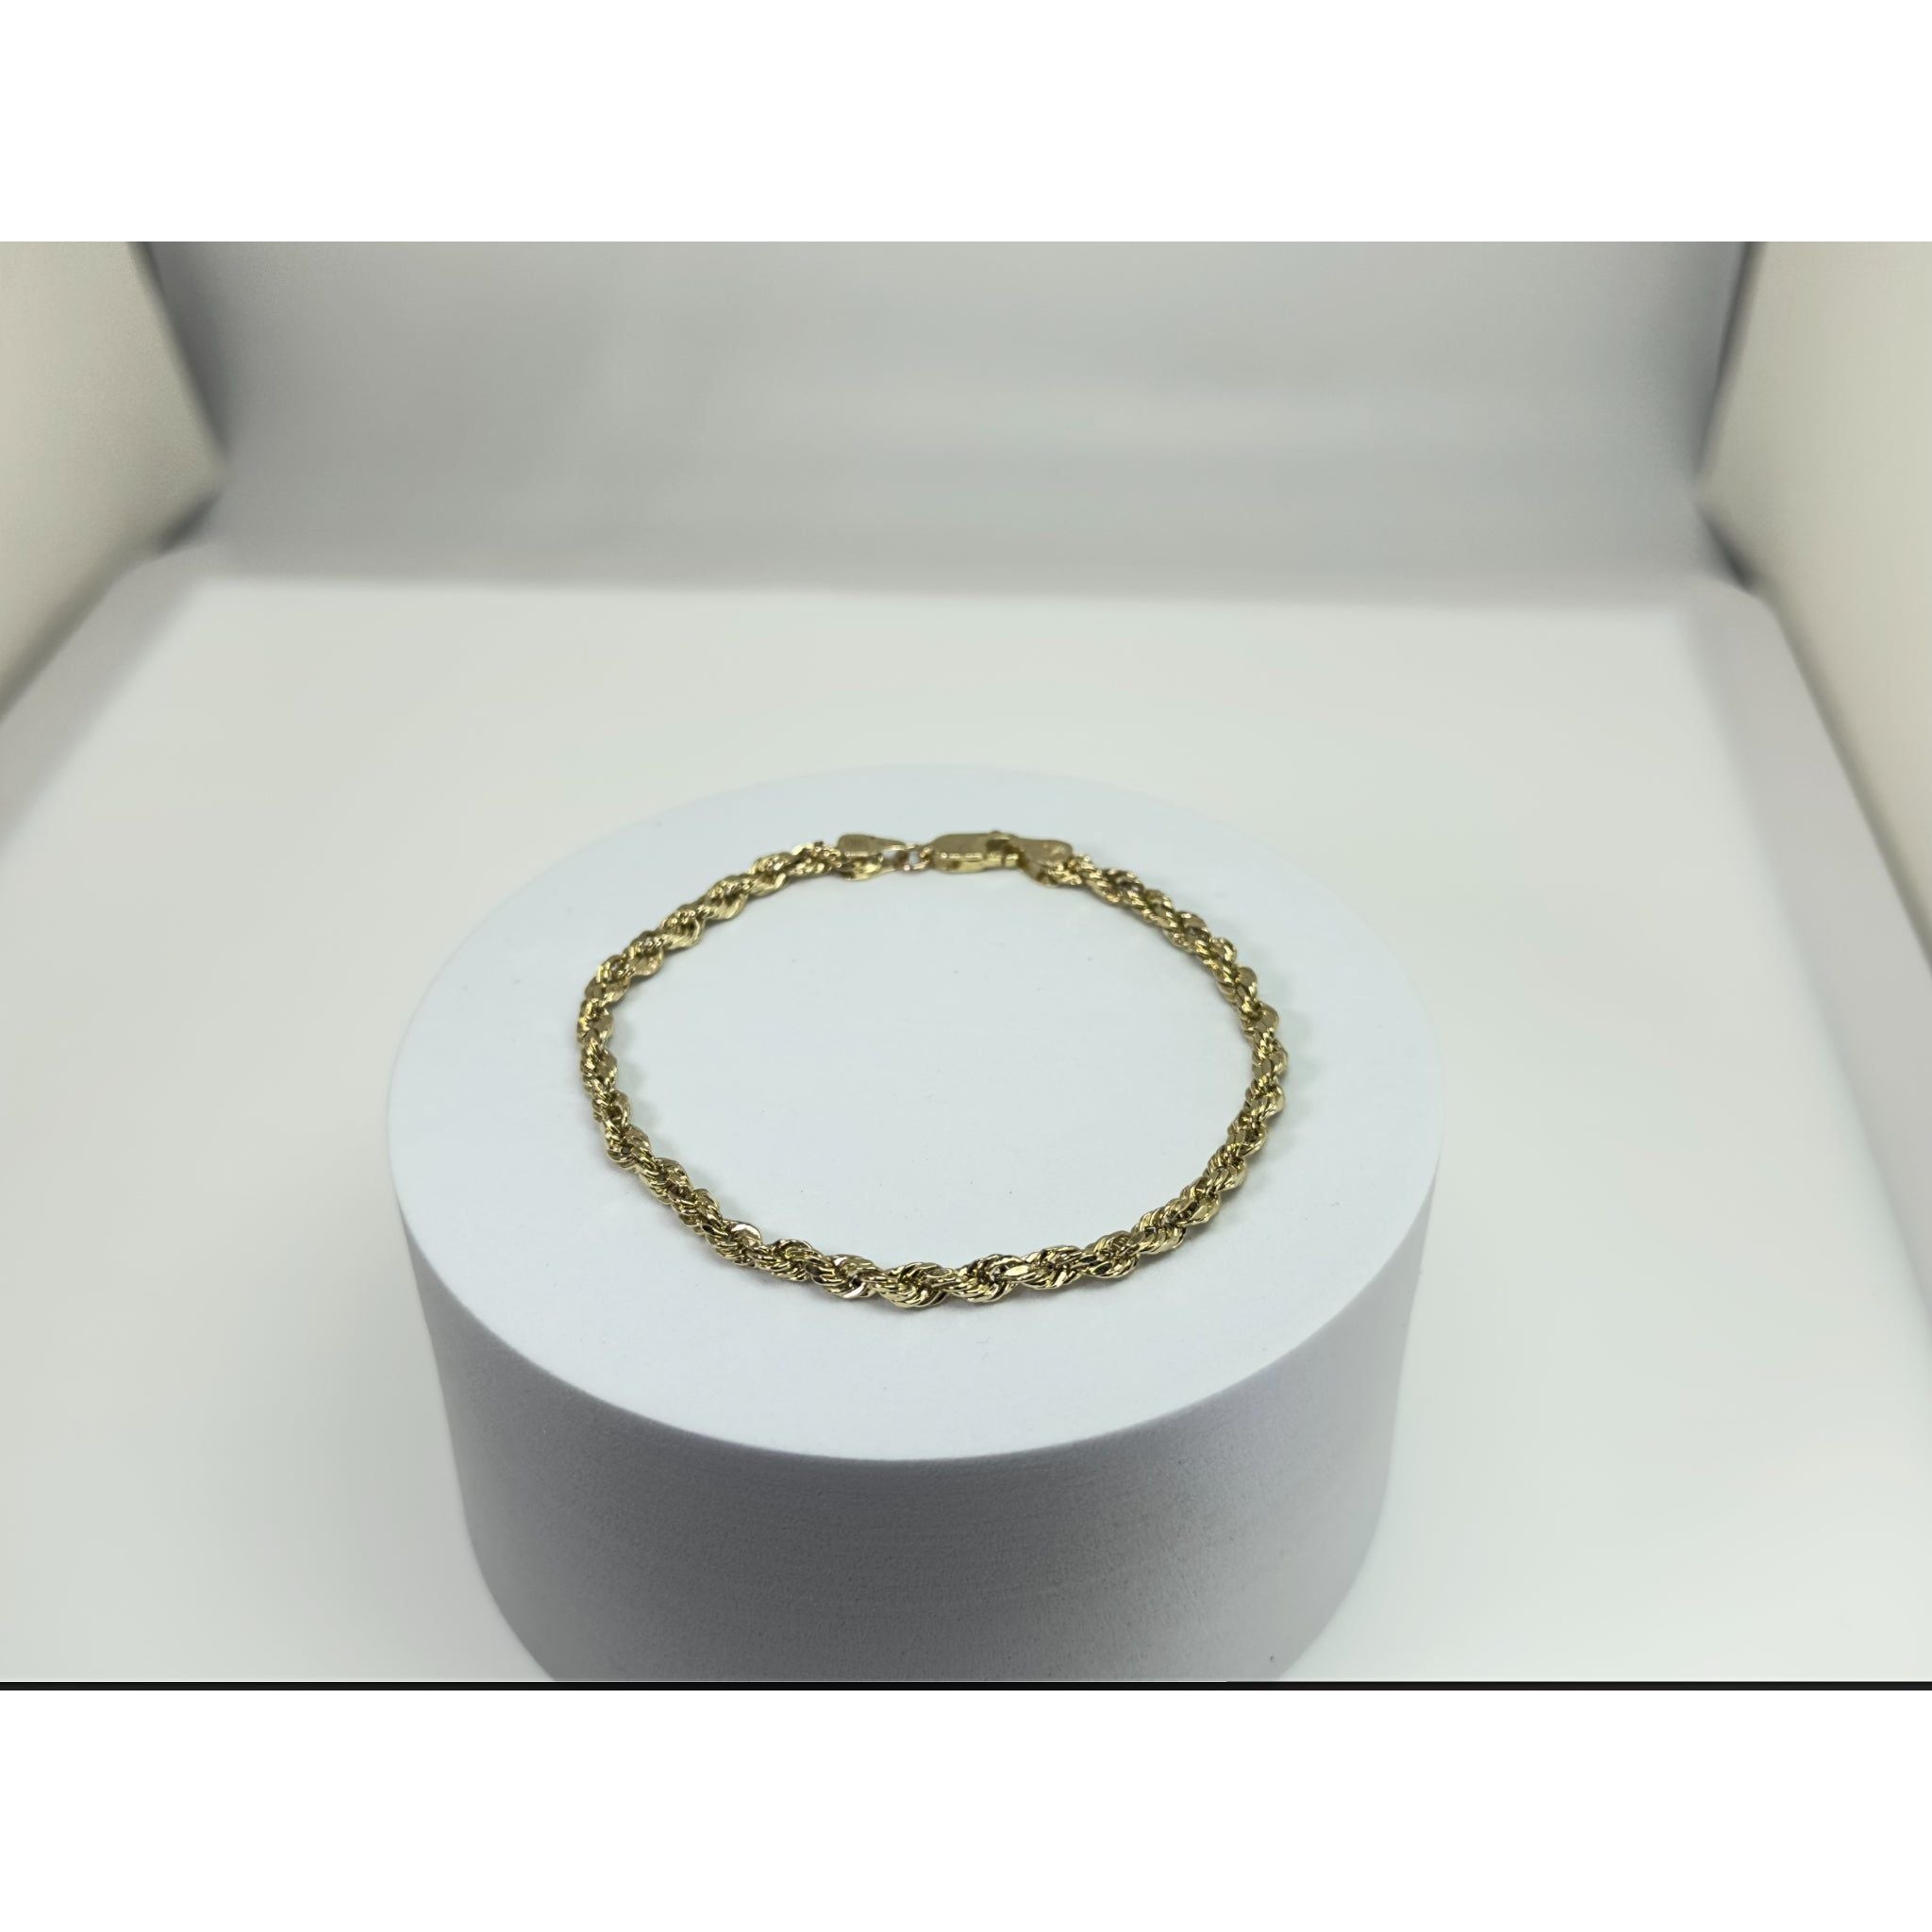 DR1701 - 10K Yellow Gold - Men's Gold Bracelet